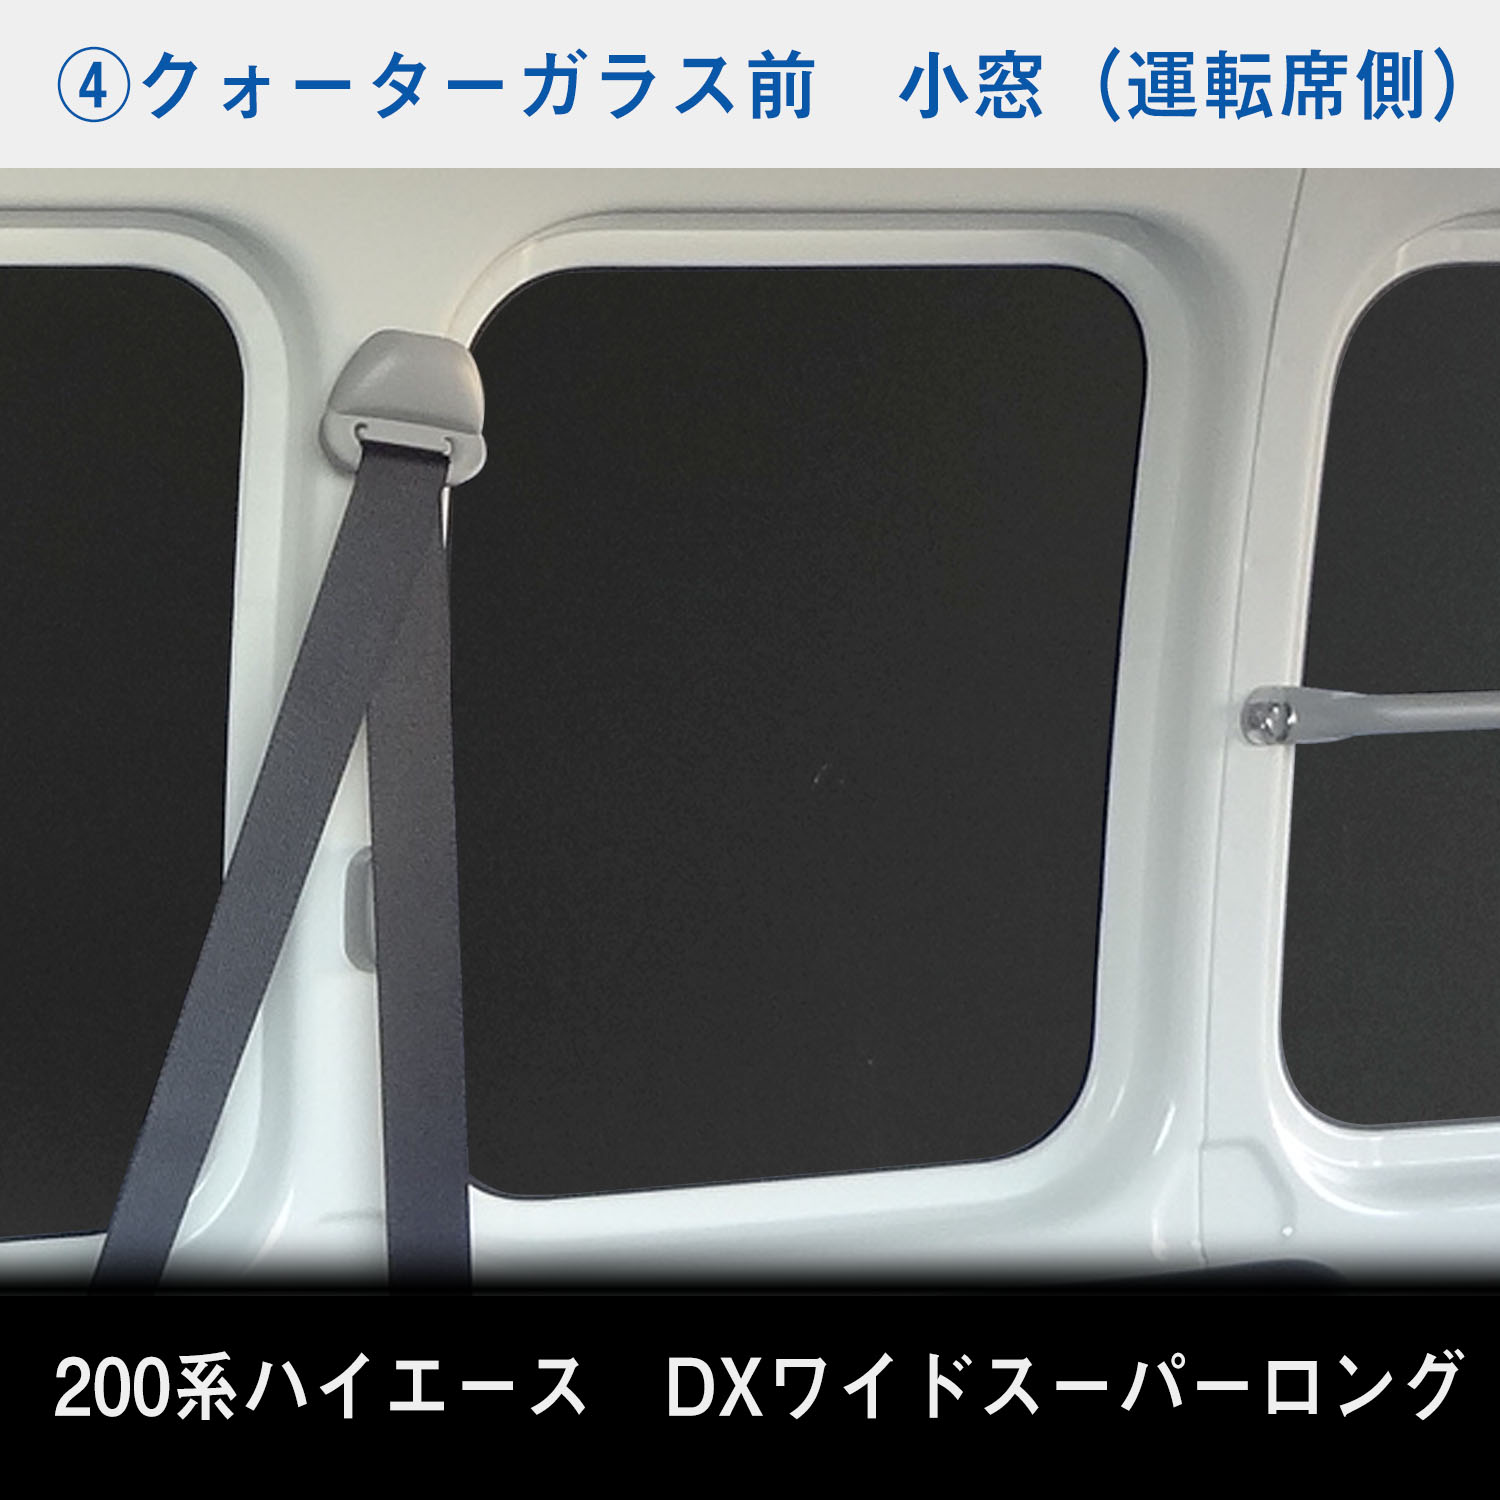 200系 ハイエース DX ワイドボディ ウィンドウパネル 5面セット 